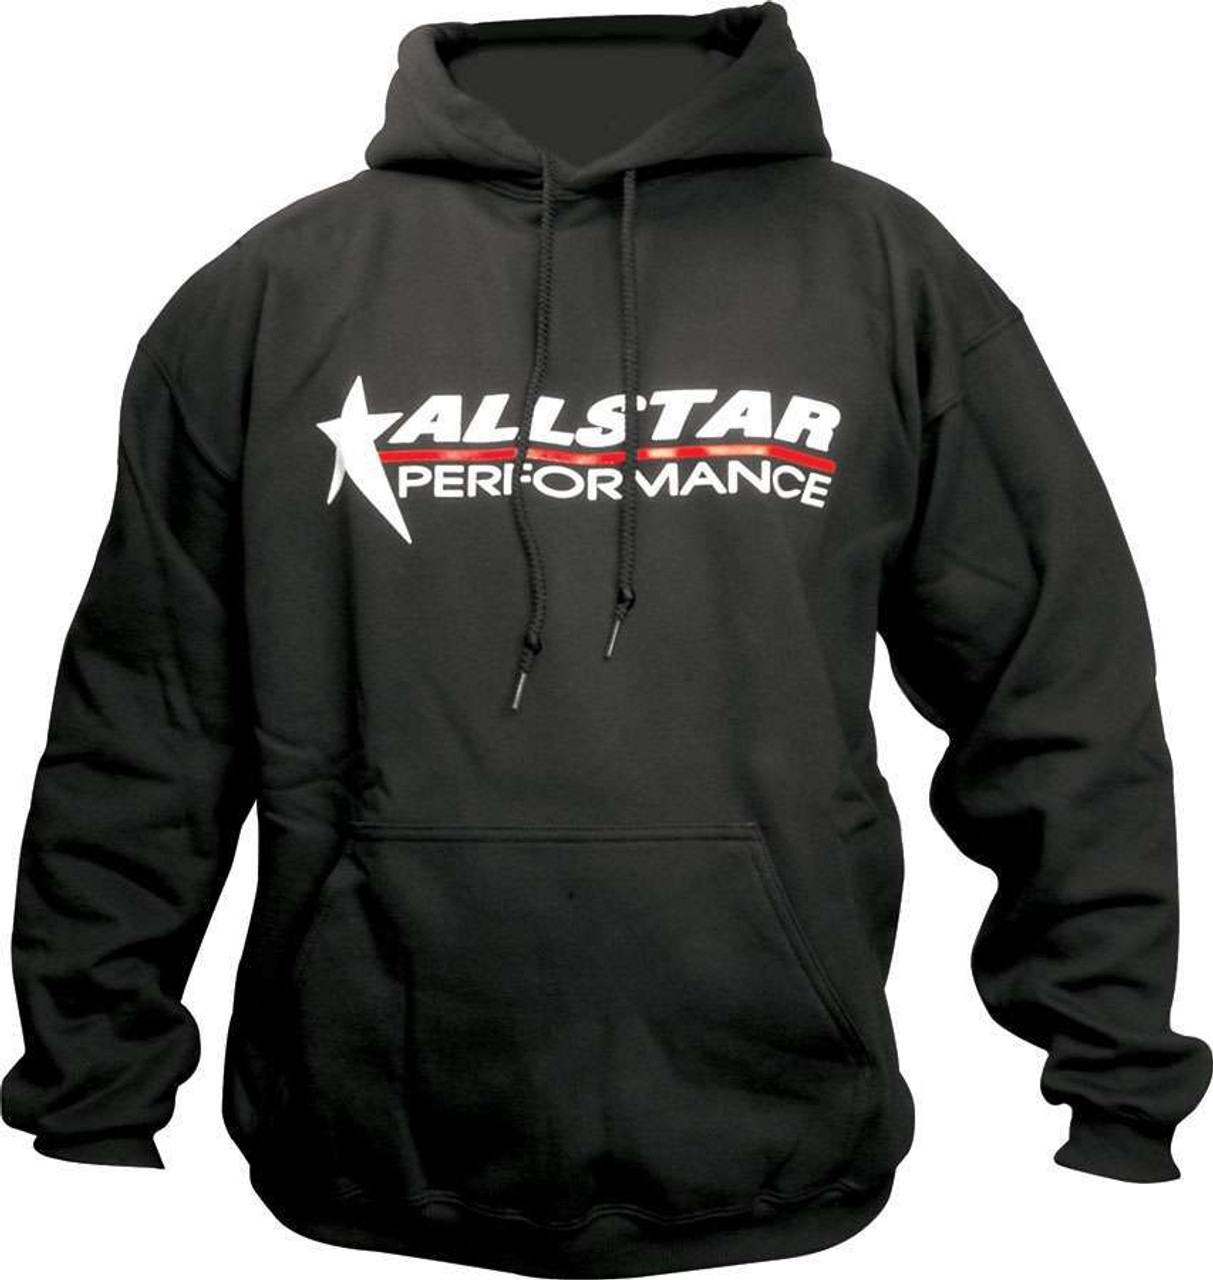 Allstar Hooded Sweatshirt Medium Black